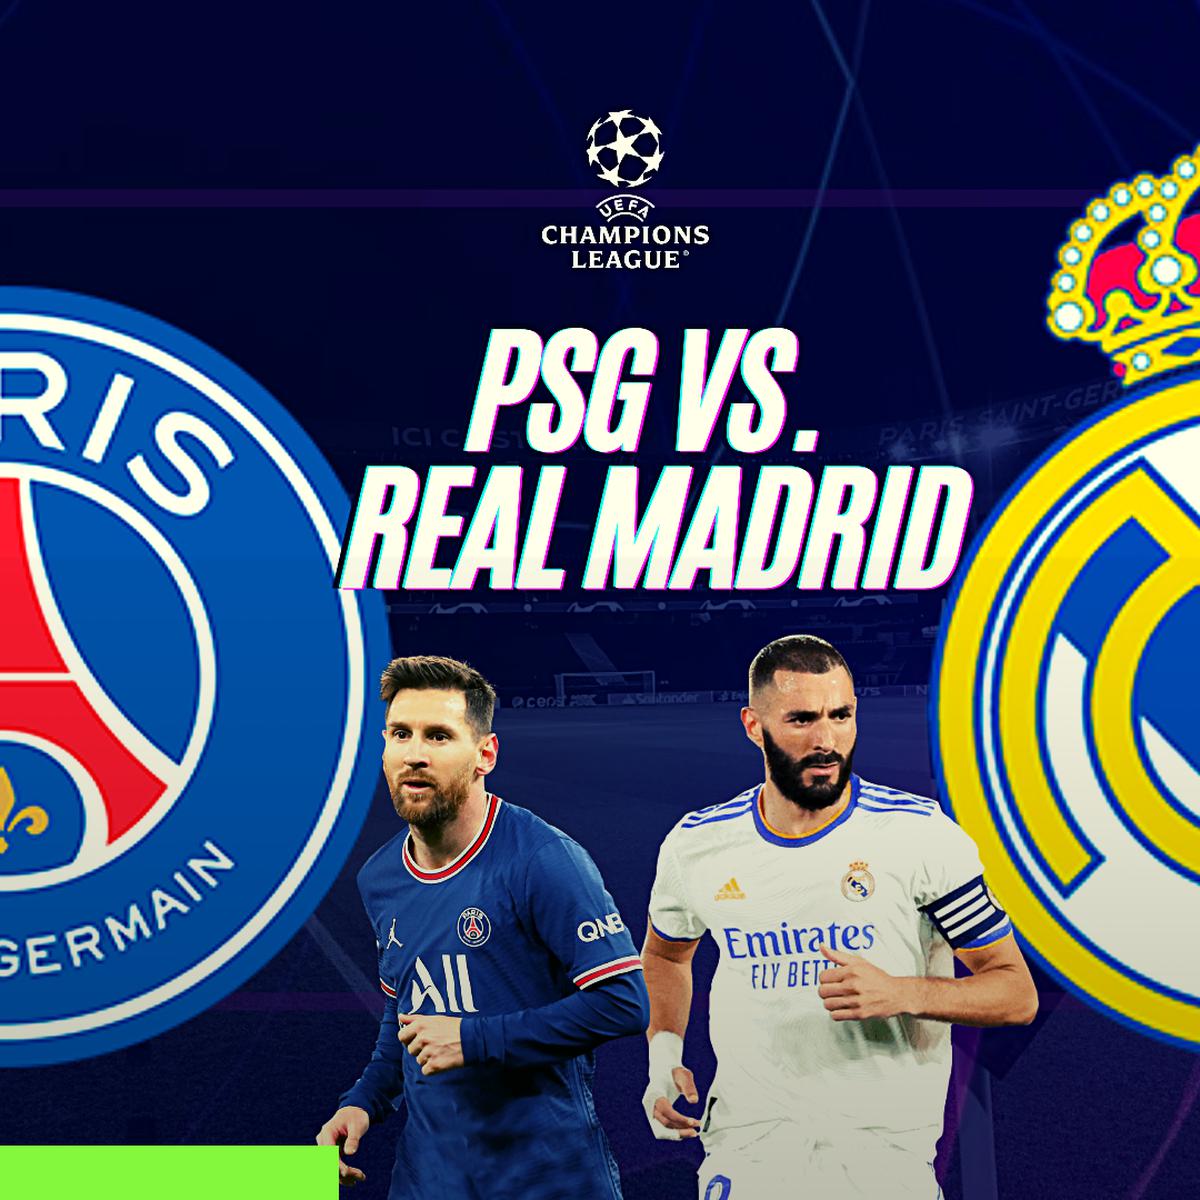 Ver Real Madrid vs. PSG en vivo: apuestas, horarios y canales TV para ver la UEFA Champions League | fox sports | movistar | espn | star + | Lionel Messi |